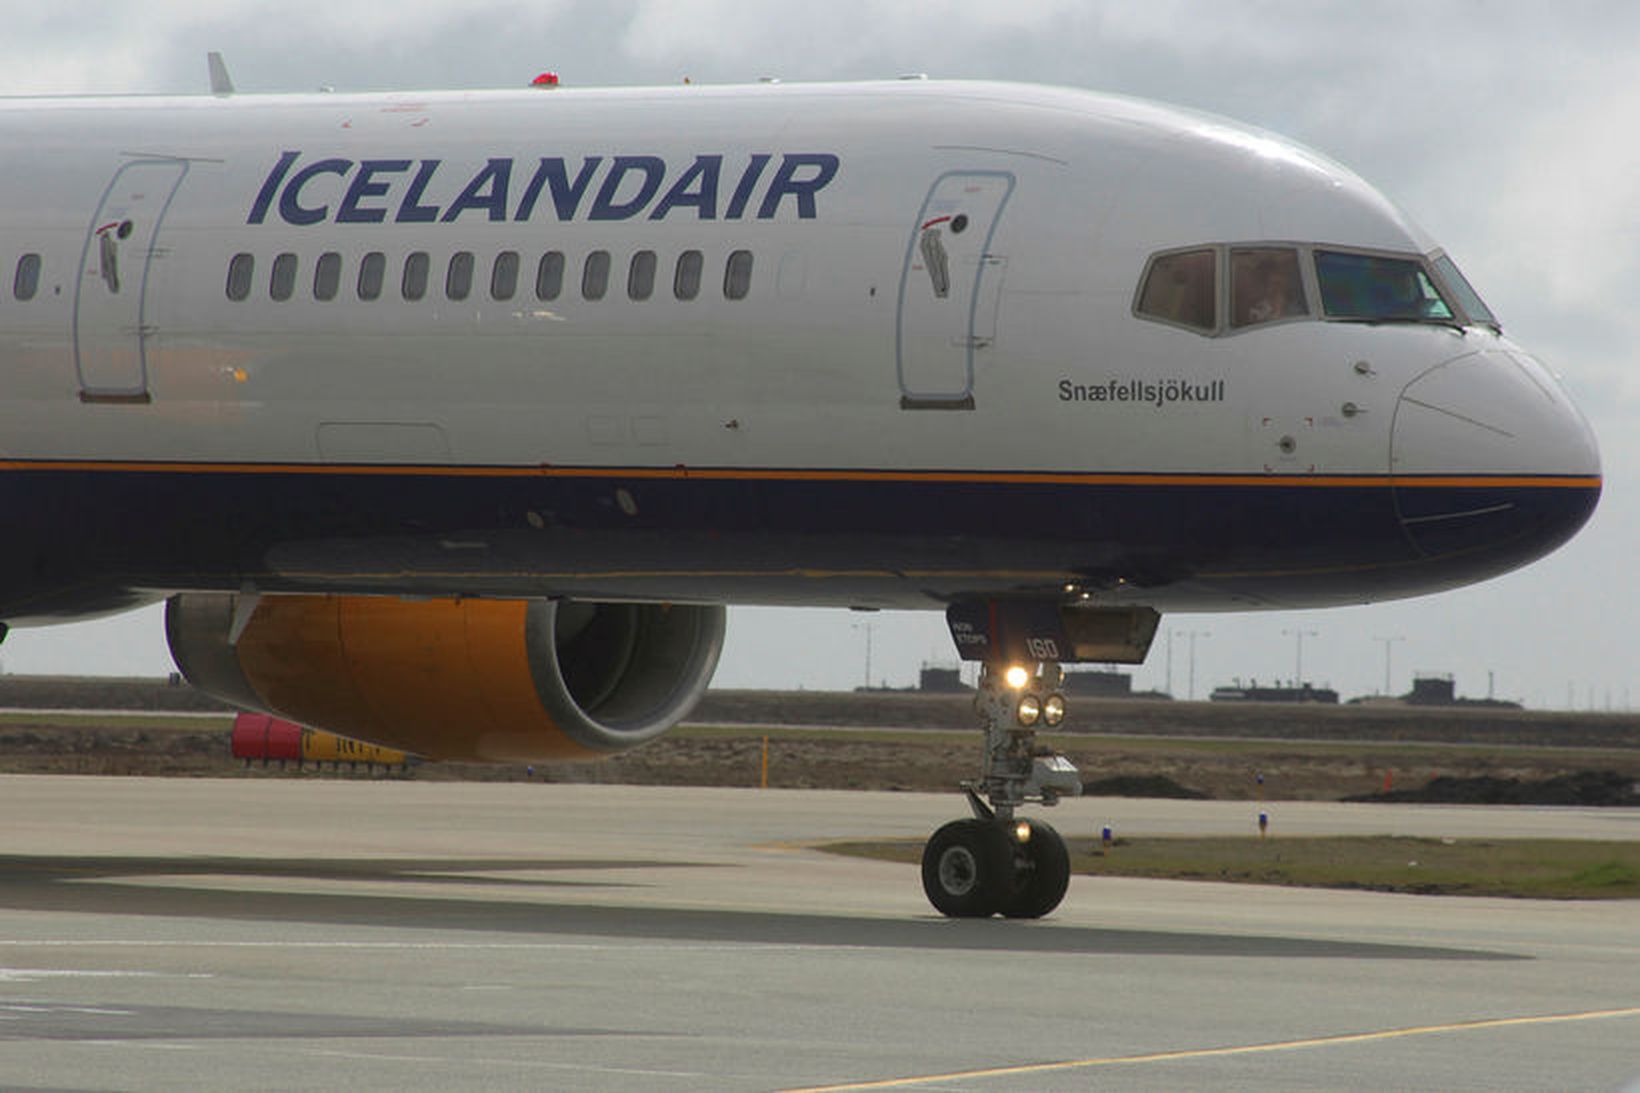 Fjölda flugferða Icelandair hefur verið aflýst vegna verkfallsins.